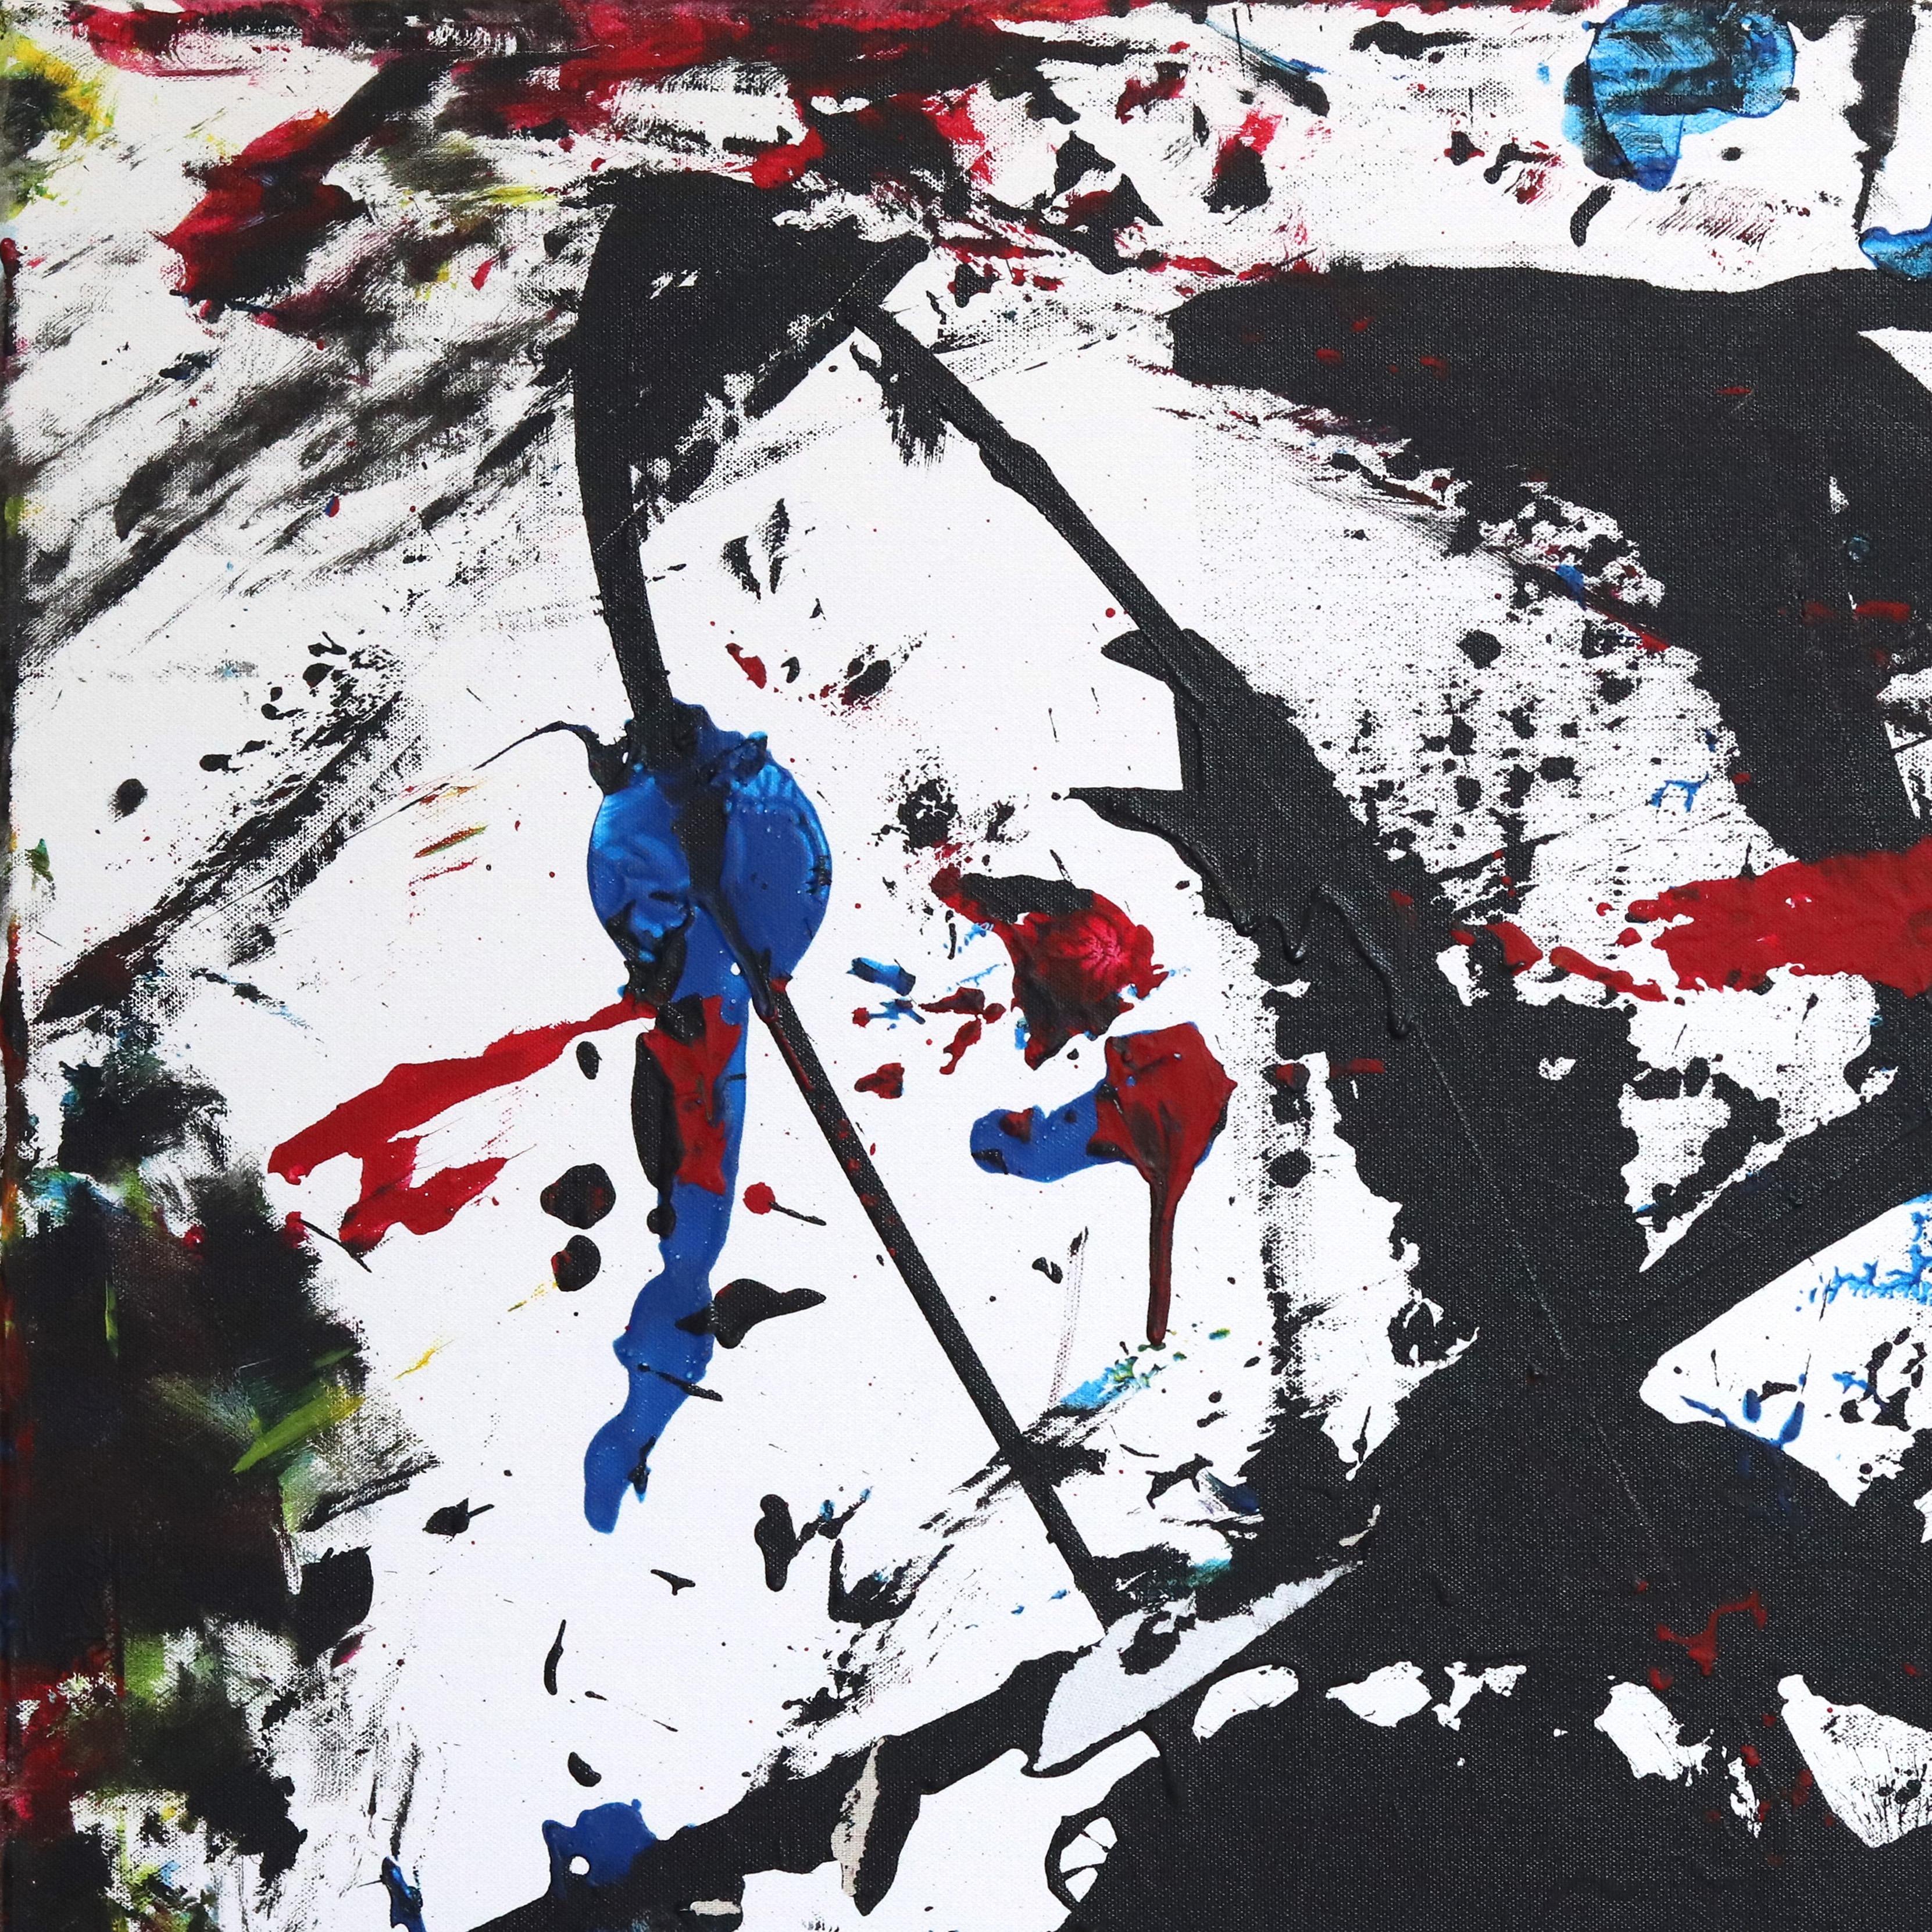 Altuzarras expressionistische, abstrakte Gemälde sind oft in monochromem Schwarz-Weiß gehalten. Er ist körperlich und emotional in die Entstehung seiner einzigartigen Werke involviert. Sein kreativer Prozess verlangt, dass sein ganzer Körper in die